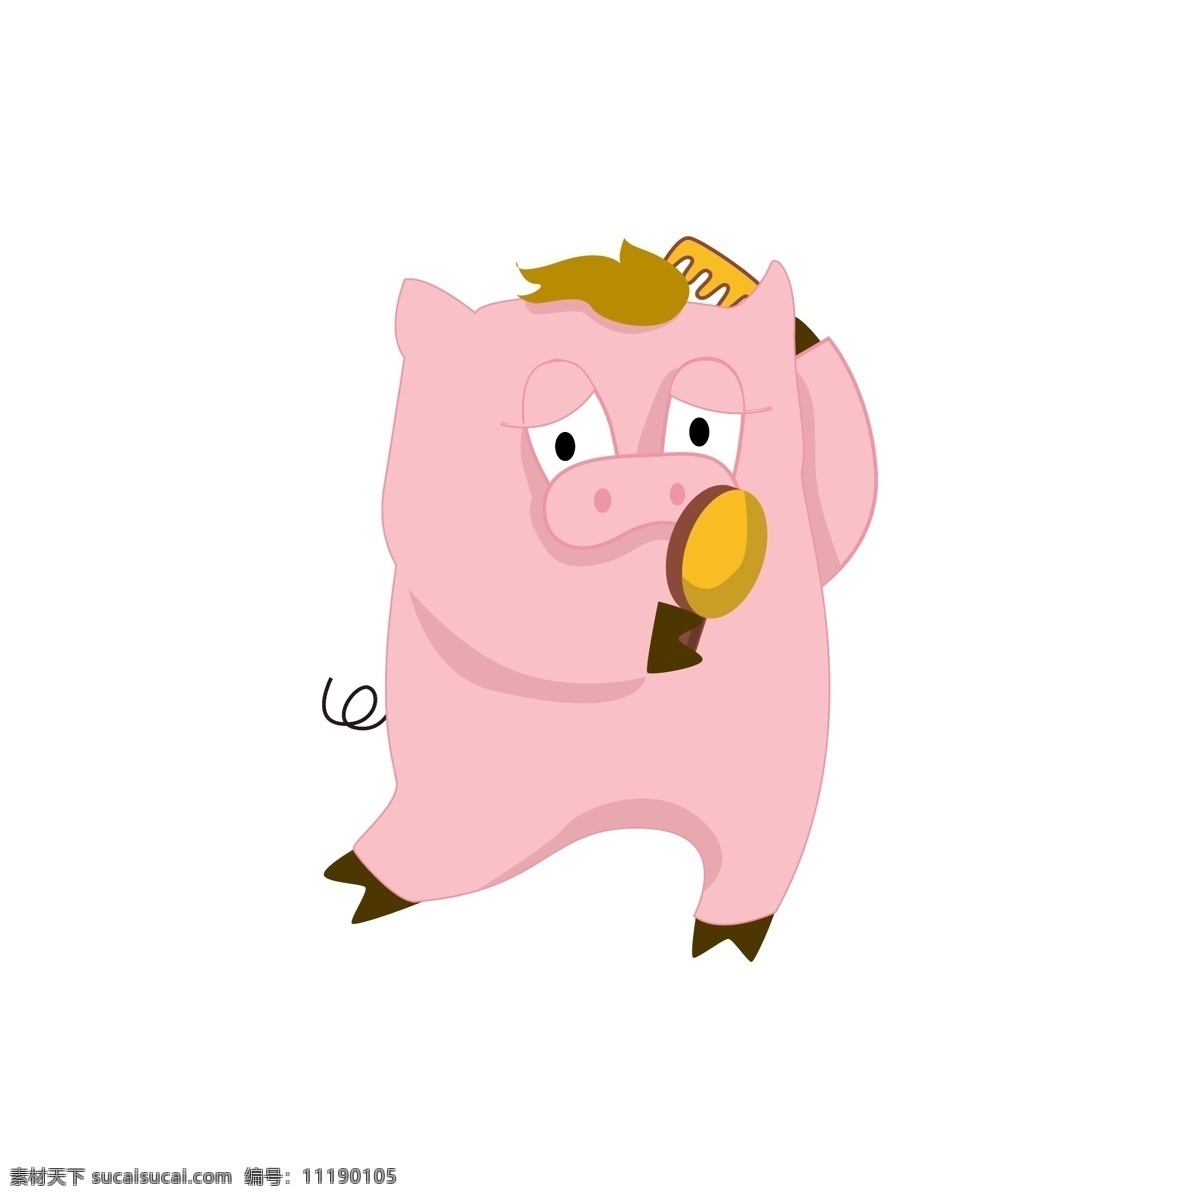 简约 猪年 卡通 猪 形象 表情 包 可爱 风格 臭美 照镜子 卡通猪 表情包 梳头发 猪元素 可爱卡通 猪形象